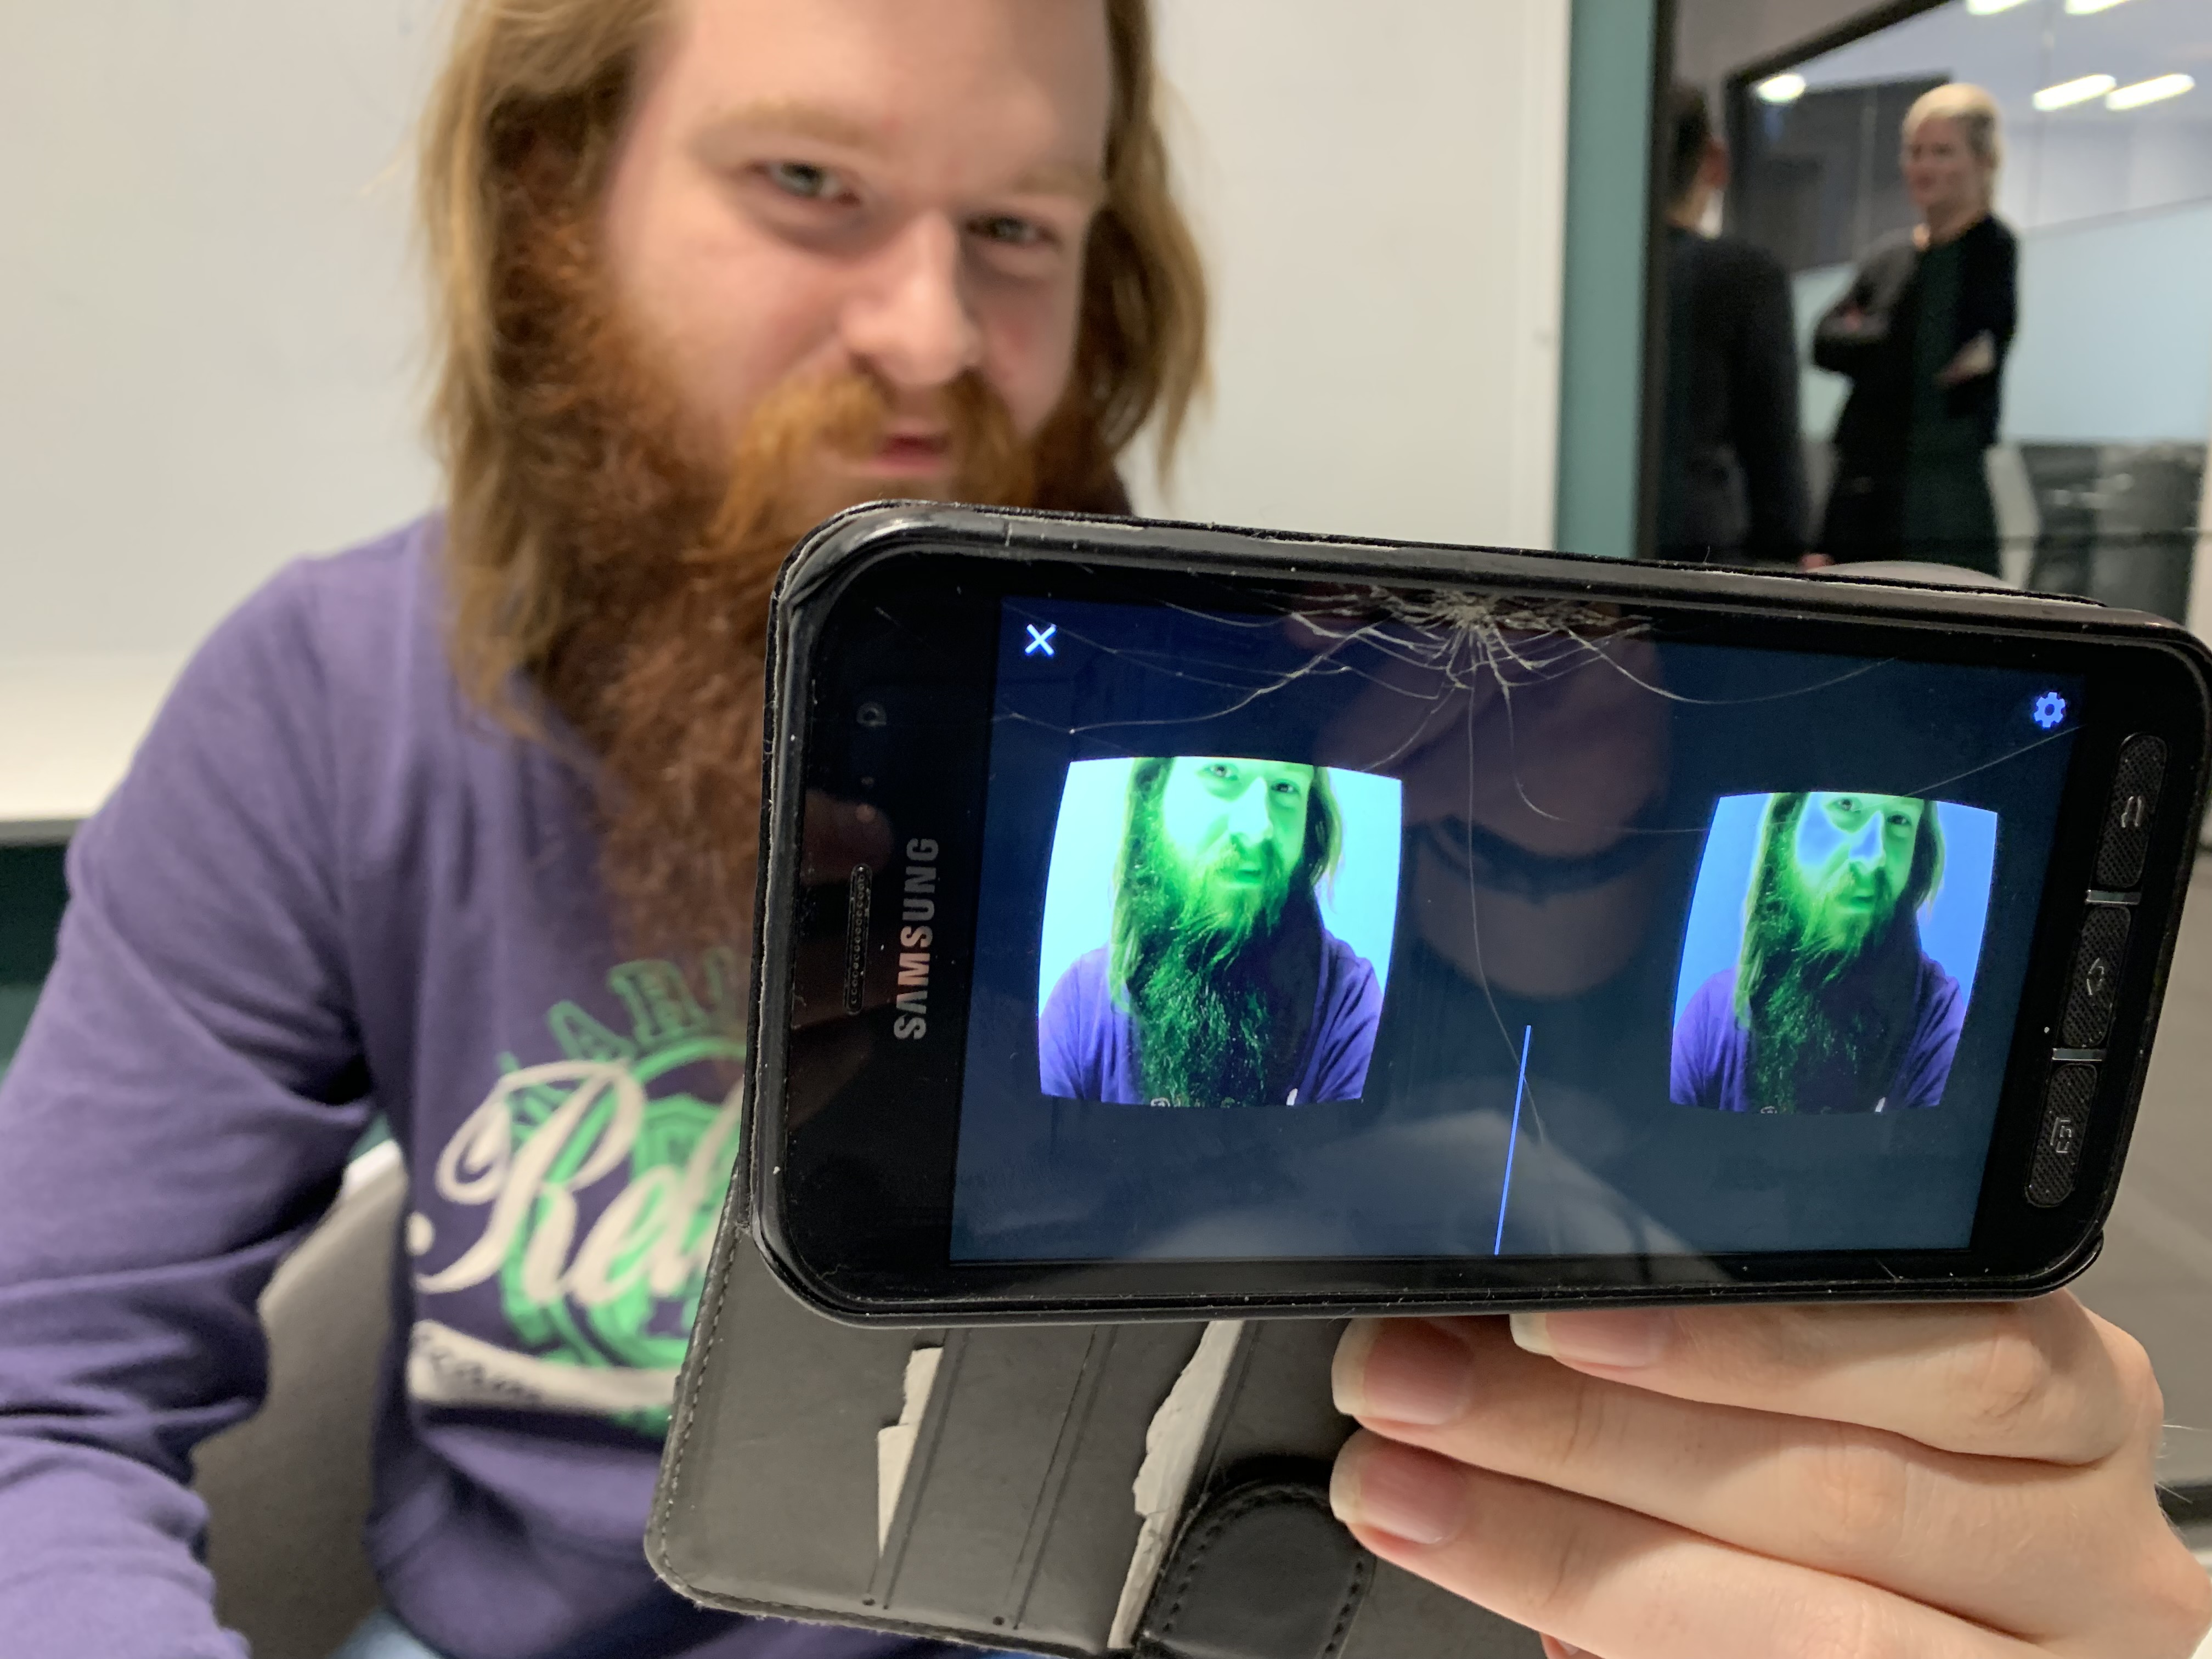 Mann med skjegg filmer seg selv med mobil.